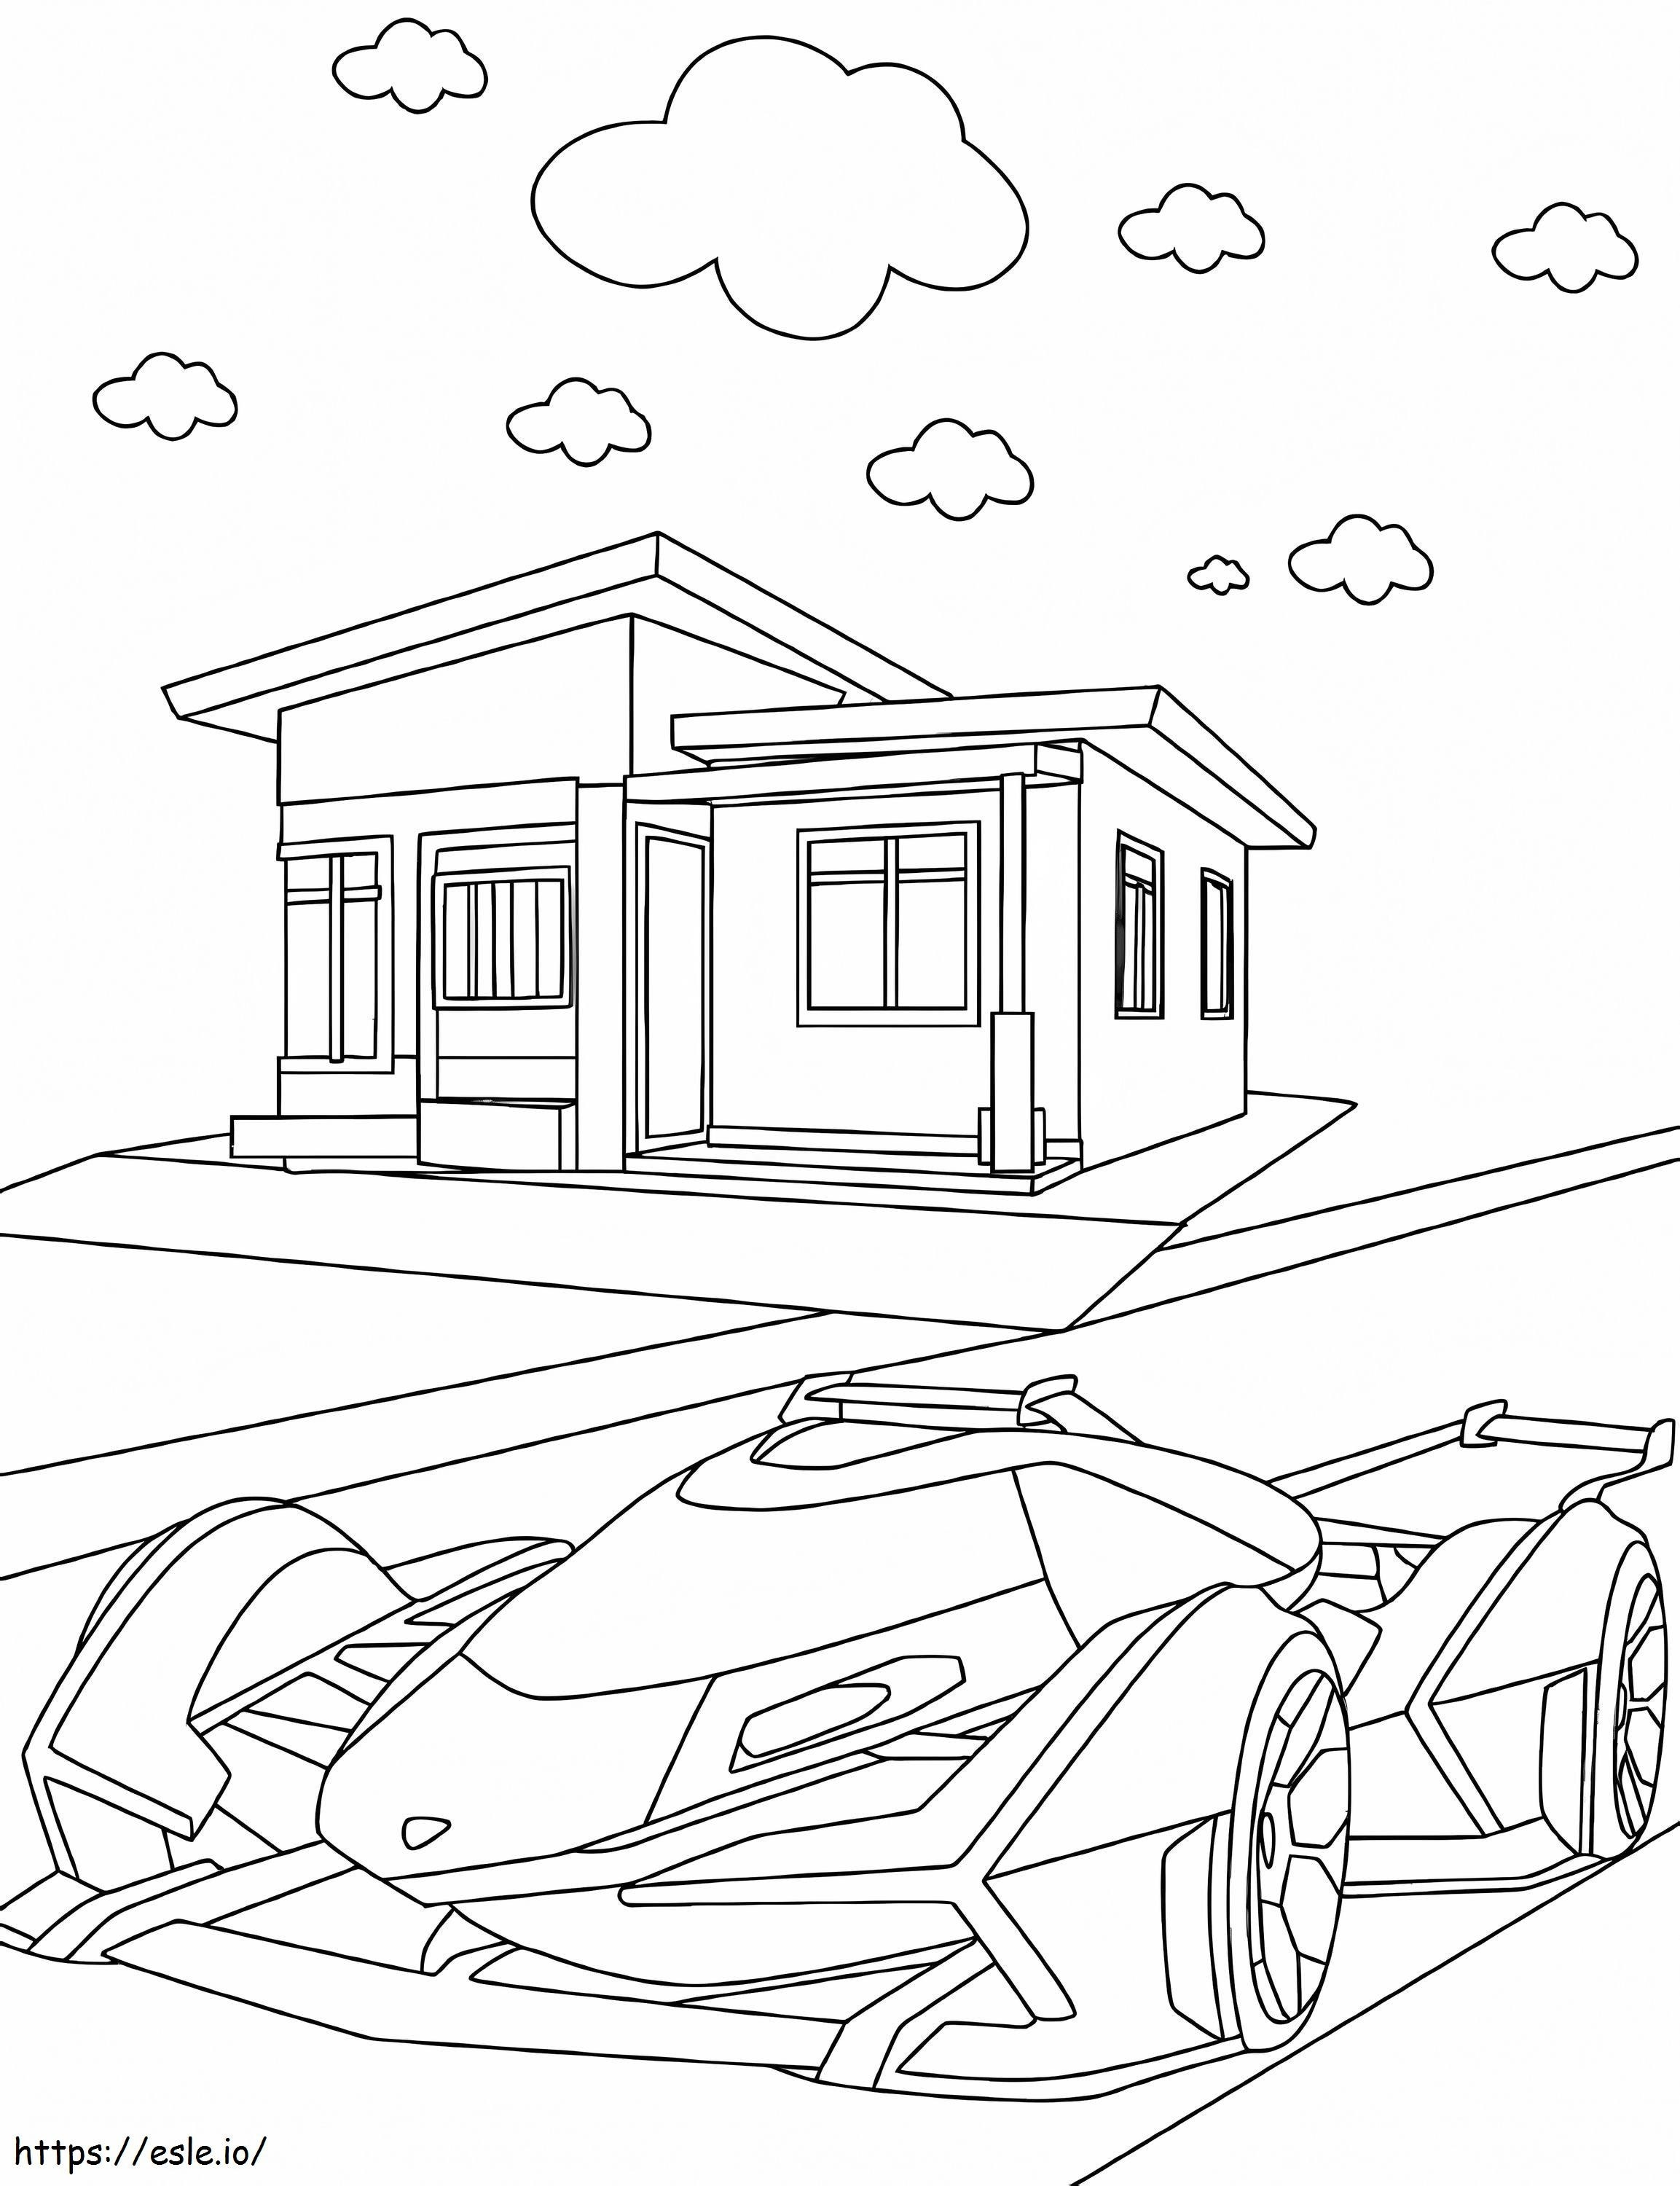 Lamborghini y casa para colorear